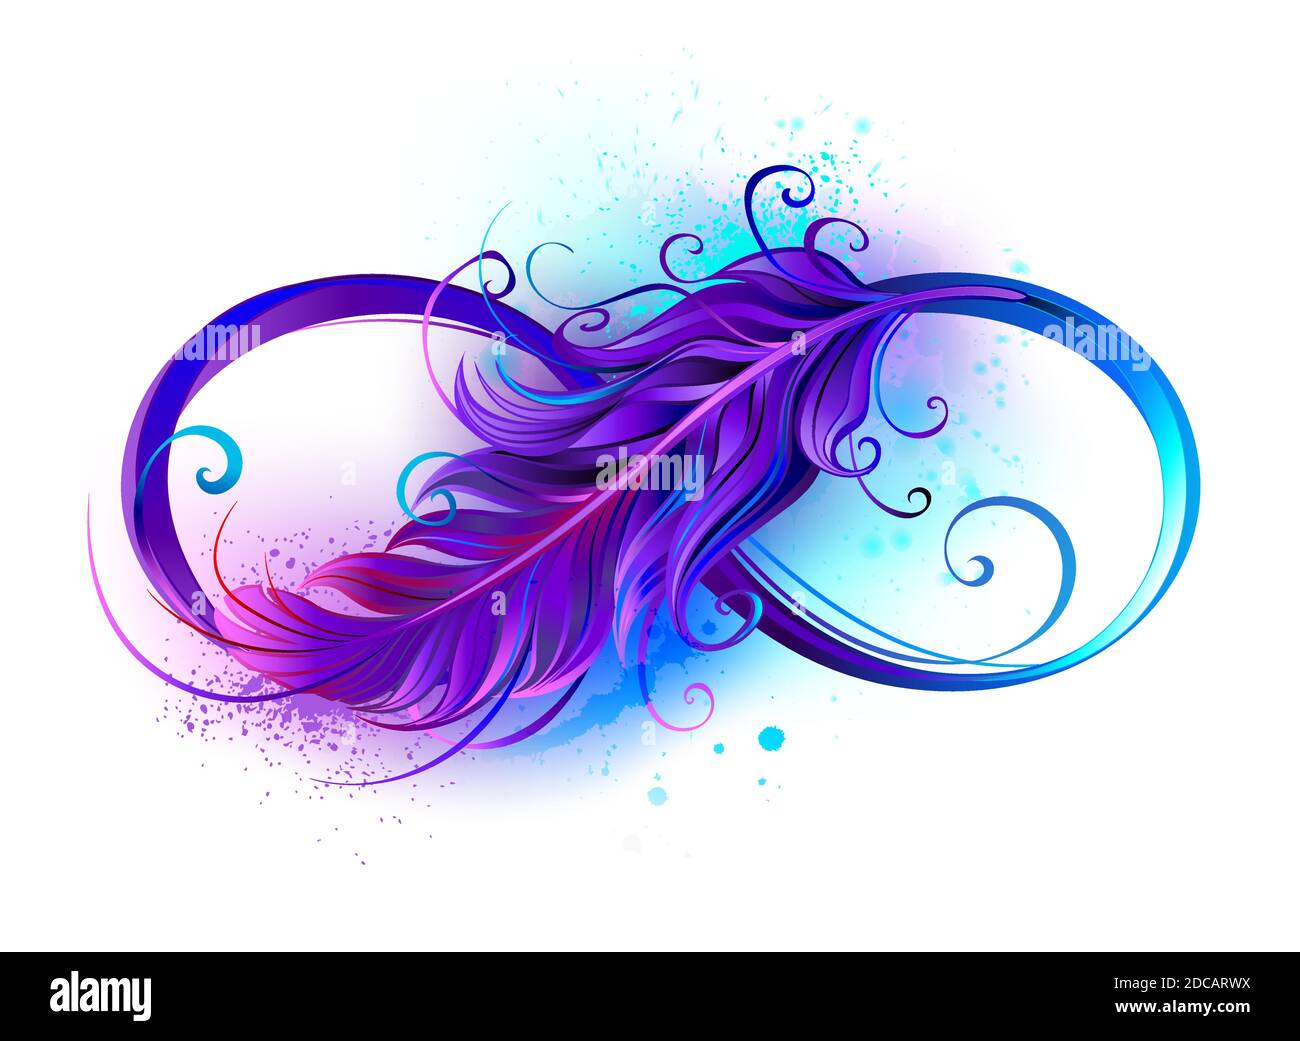 Simbolo Infinity con una bella piuma dipinta in viola e blu colori luminosi su sfondo bianco. Illustrazione Vettoriale